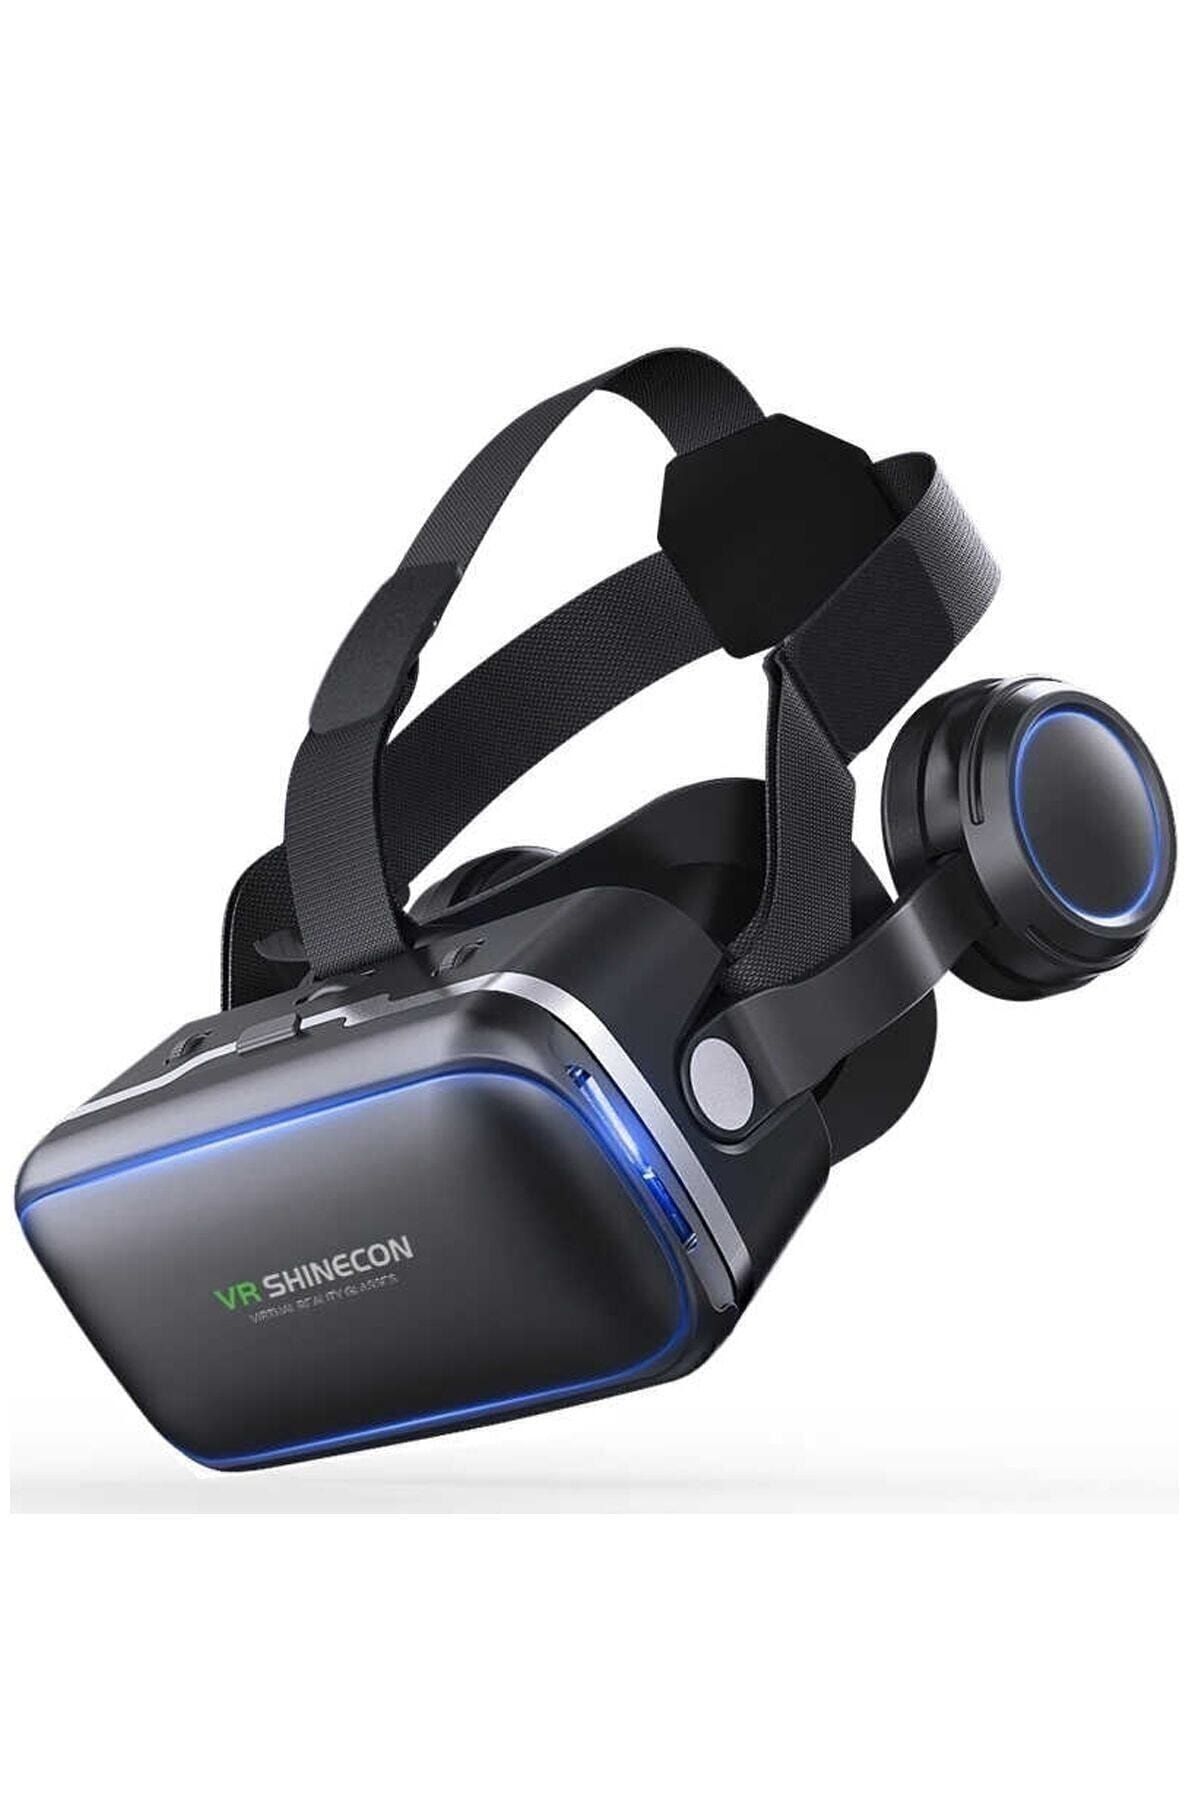 VR Shinecon Shinecon 3d Sanal Gerçeklik Gözlüğü 3.5-6.2 Inç